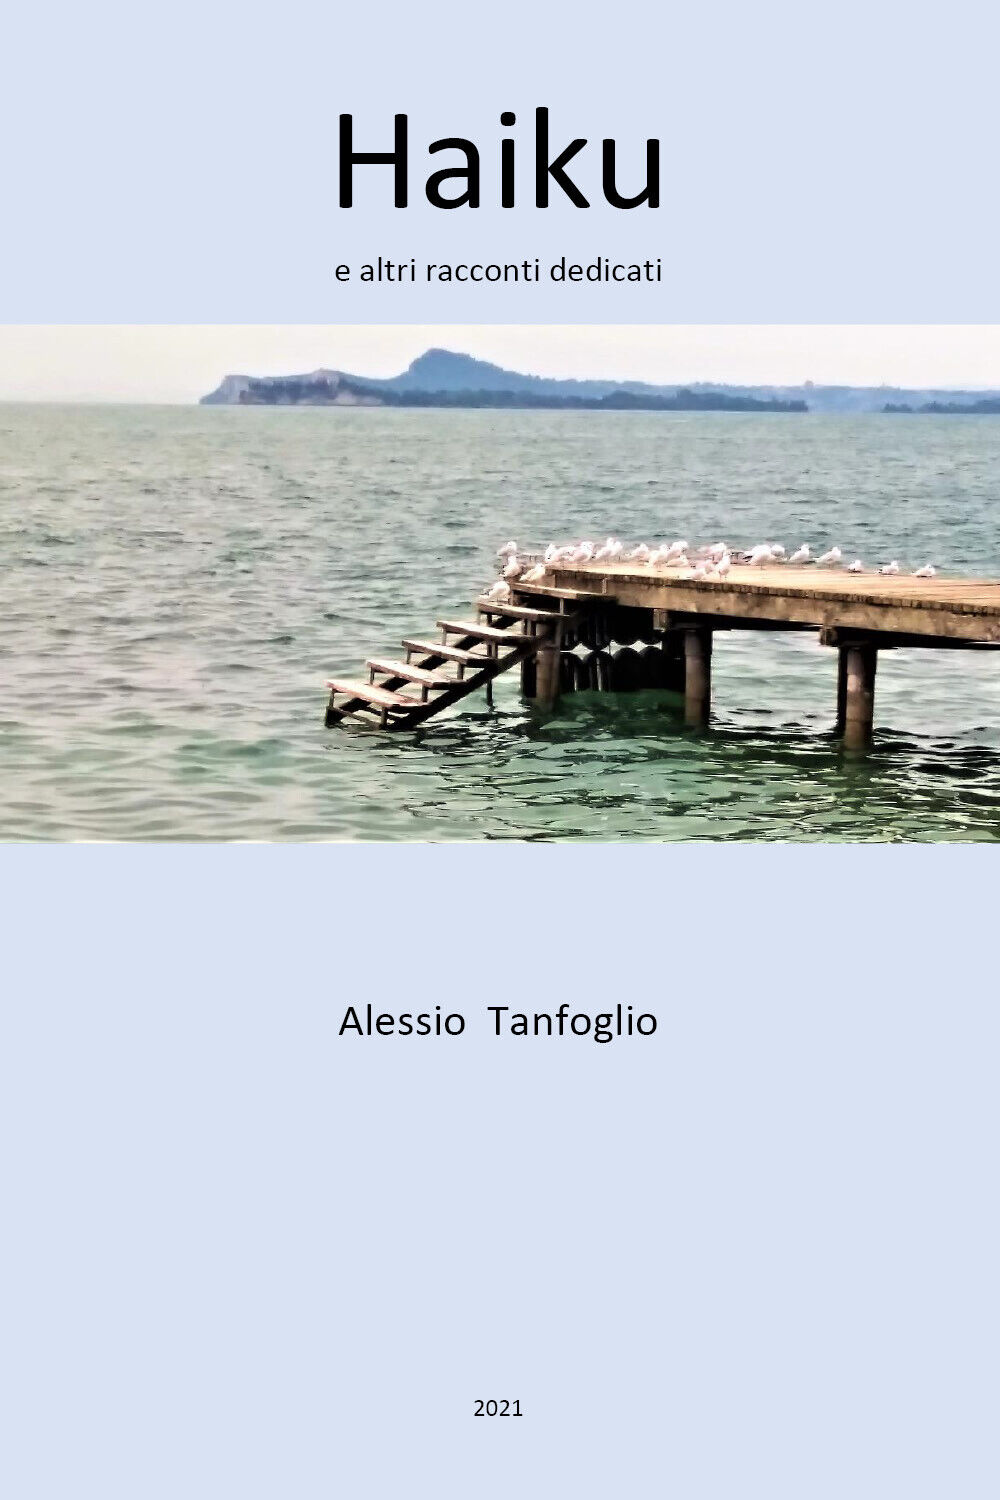 Haiku e altri racconti dedicati di Alessio Tanfoglio,  2021,  Youcanprint